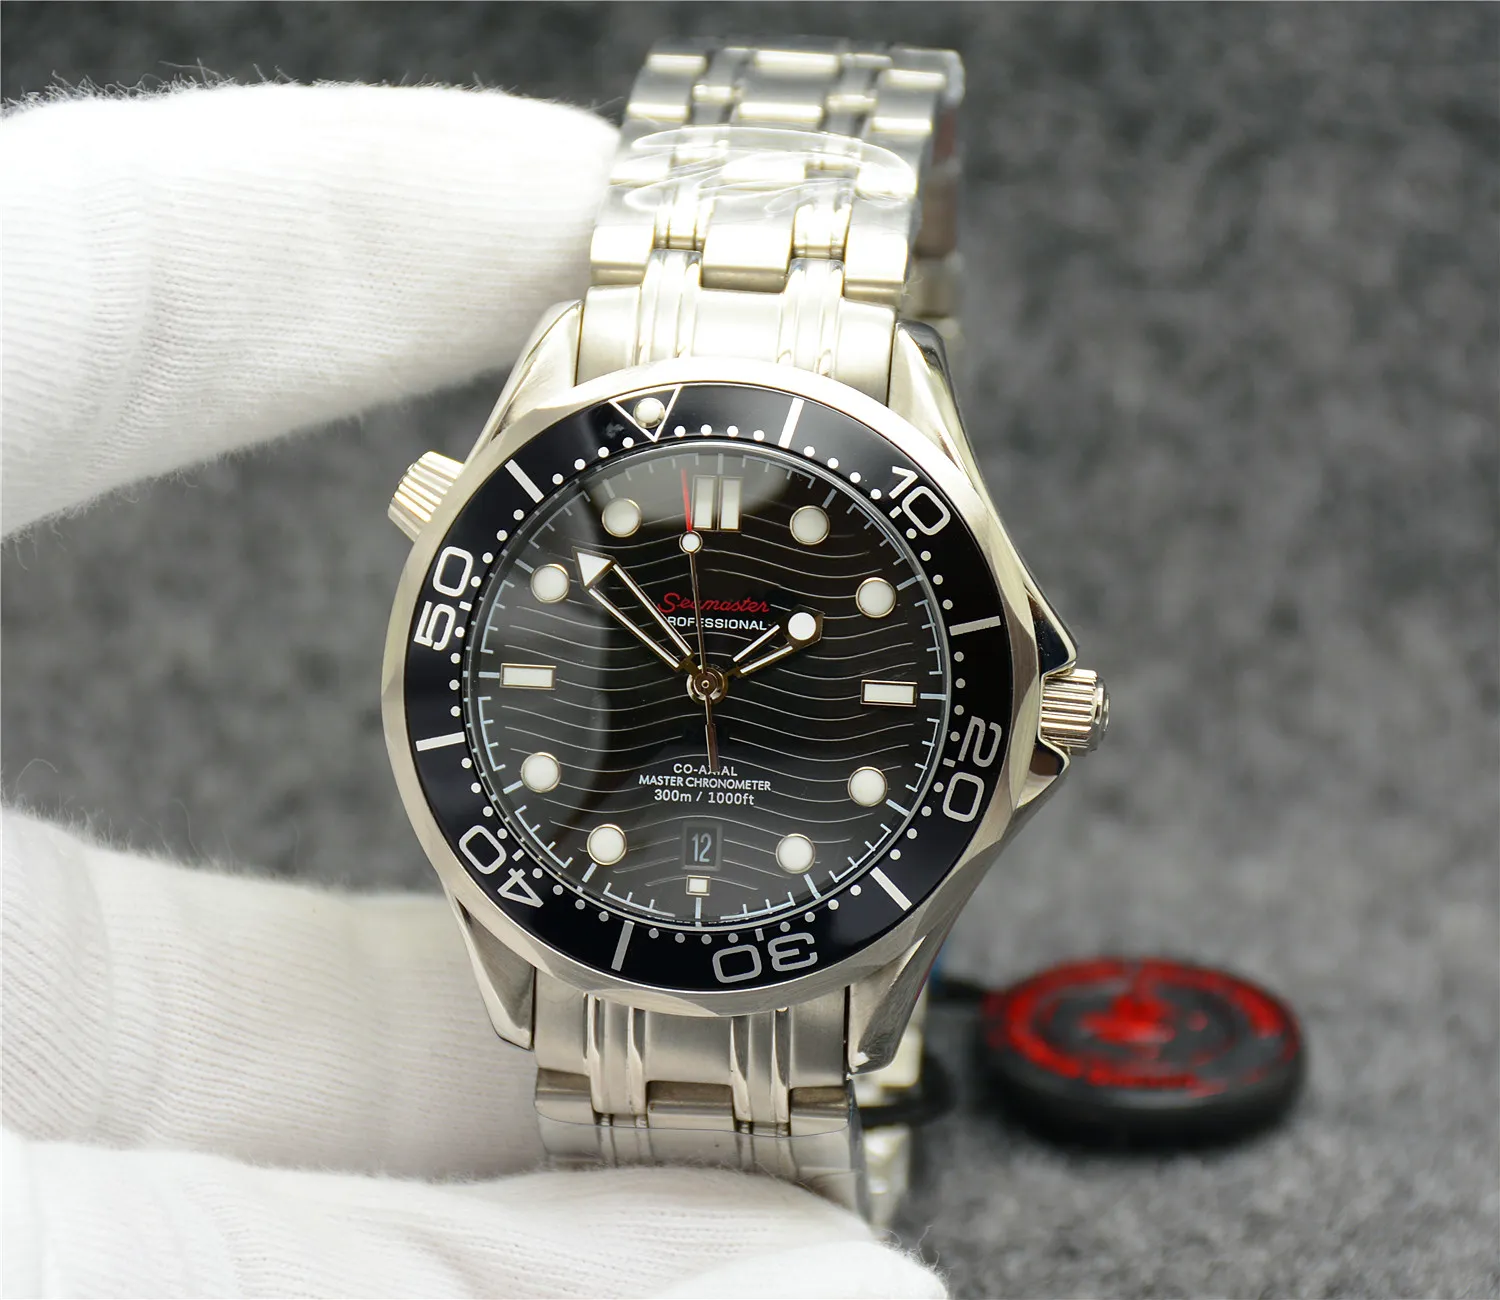 OM automatische mechanische 42 mm herenhorloges kijken zwart blauwe wijzerplaat met roestvrijstalen armband draaibare bezel288s